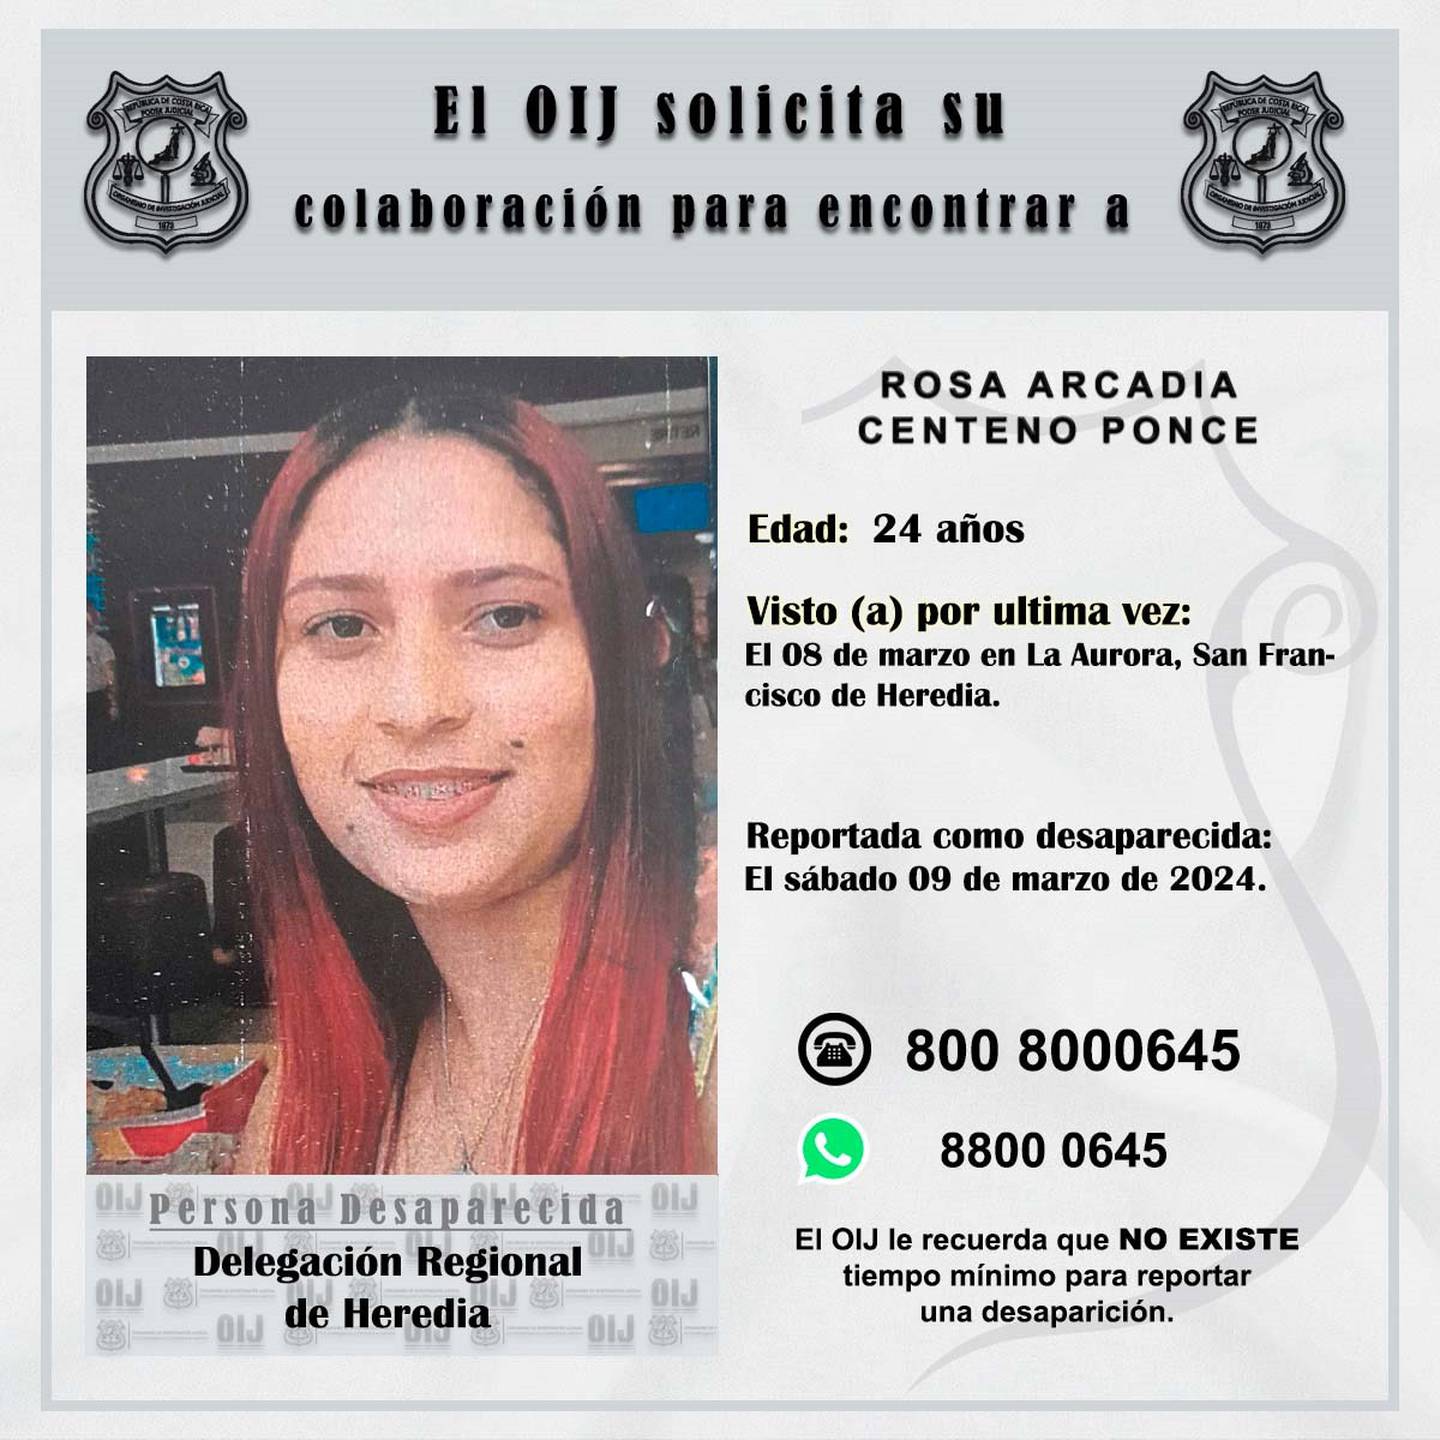 Rosa Arcadia Centeno Ponce, de 24 años, fue vista por última vez el viernes 8 de marzo anterior y desde entonces se desconoce su paradero. Foto: OIJ